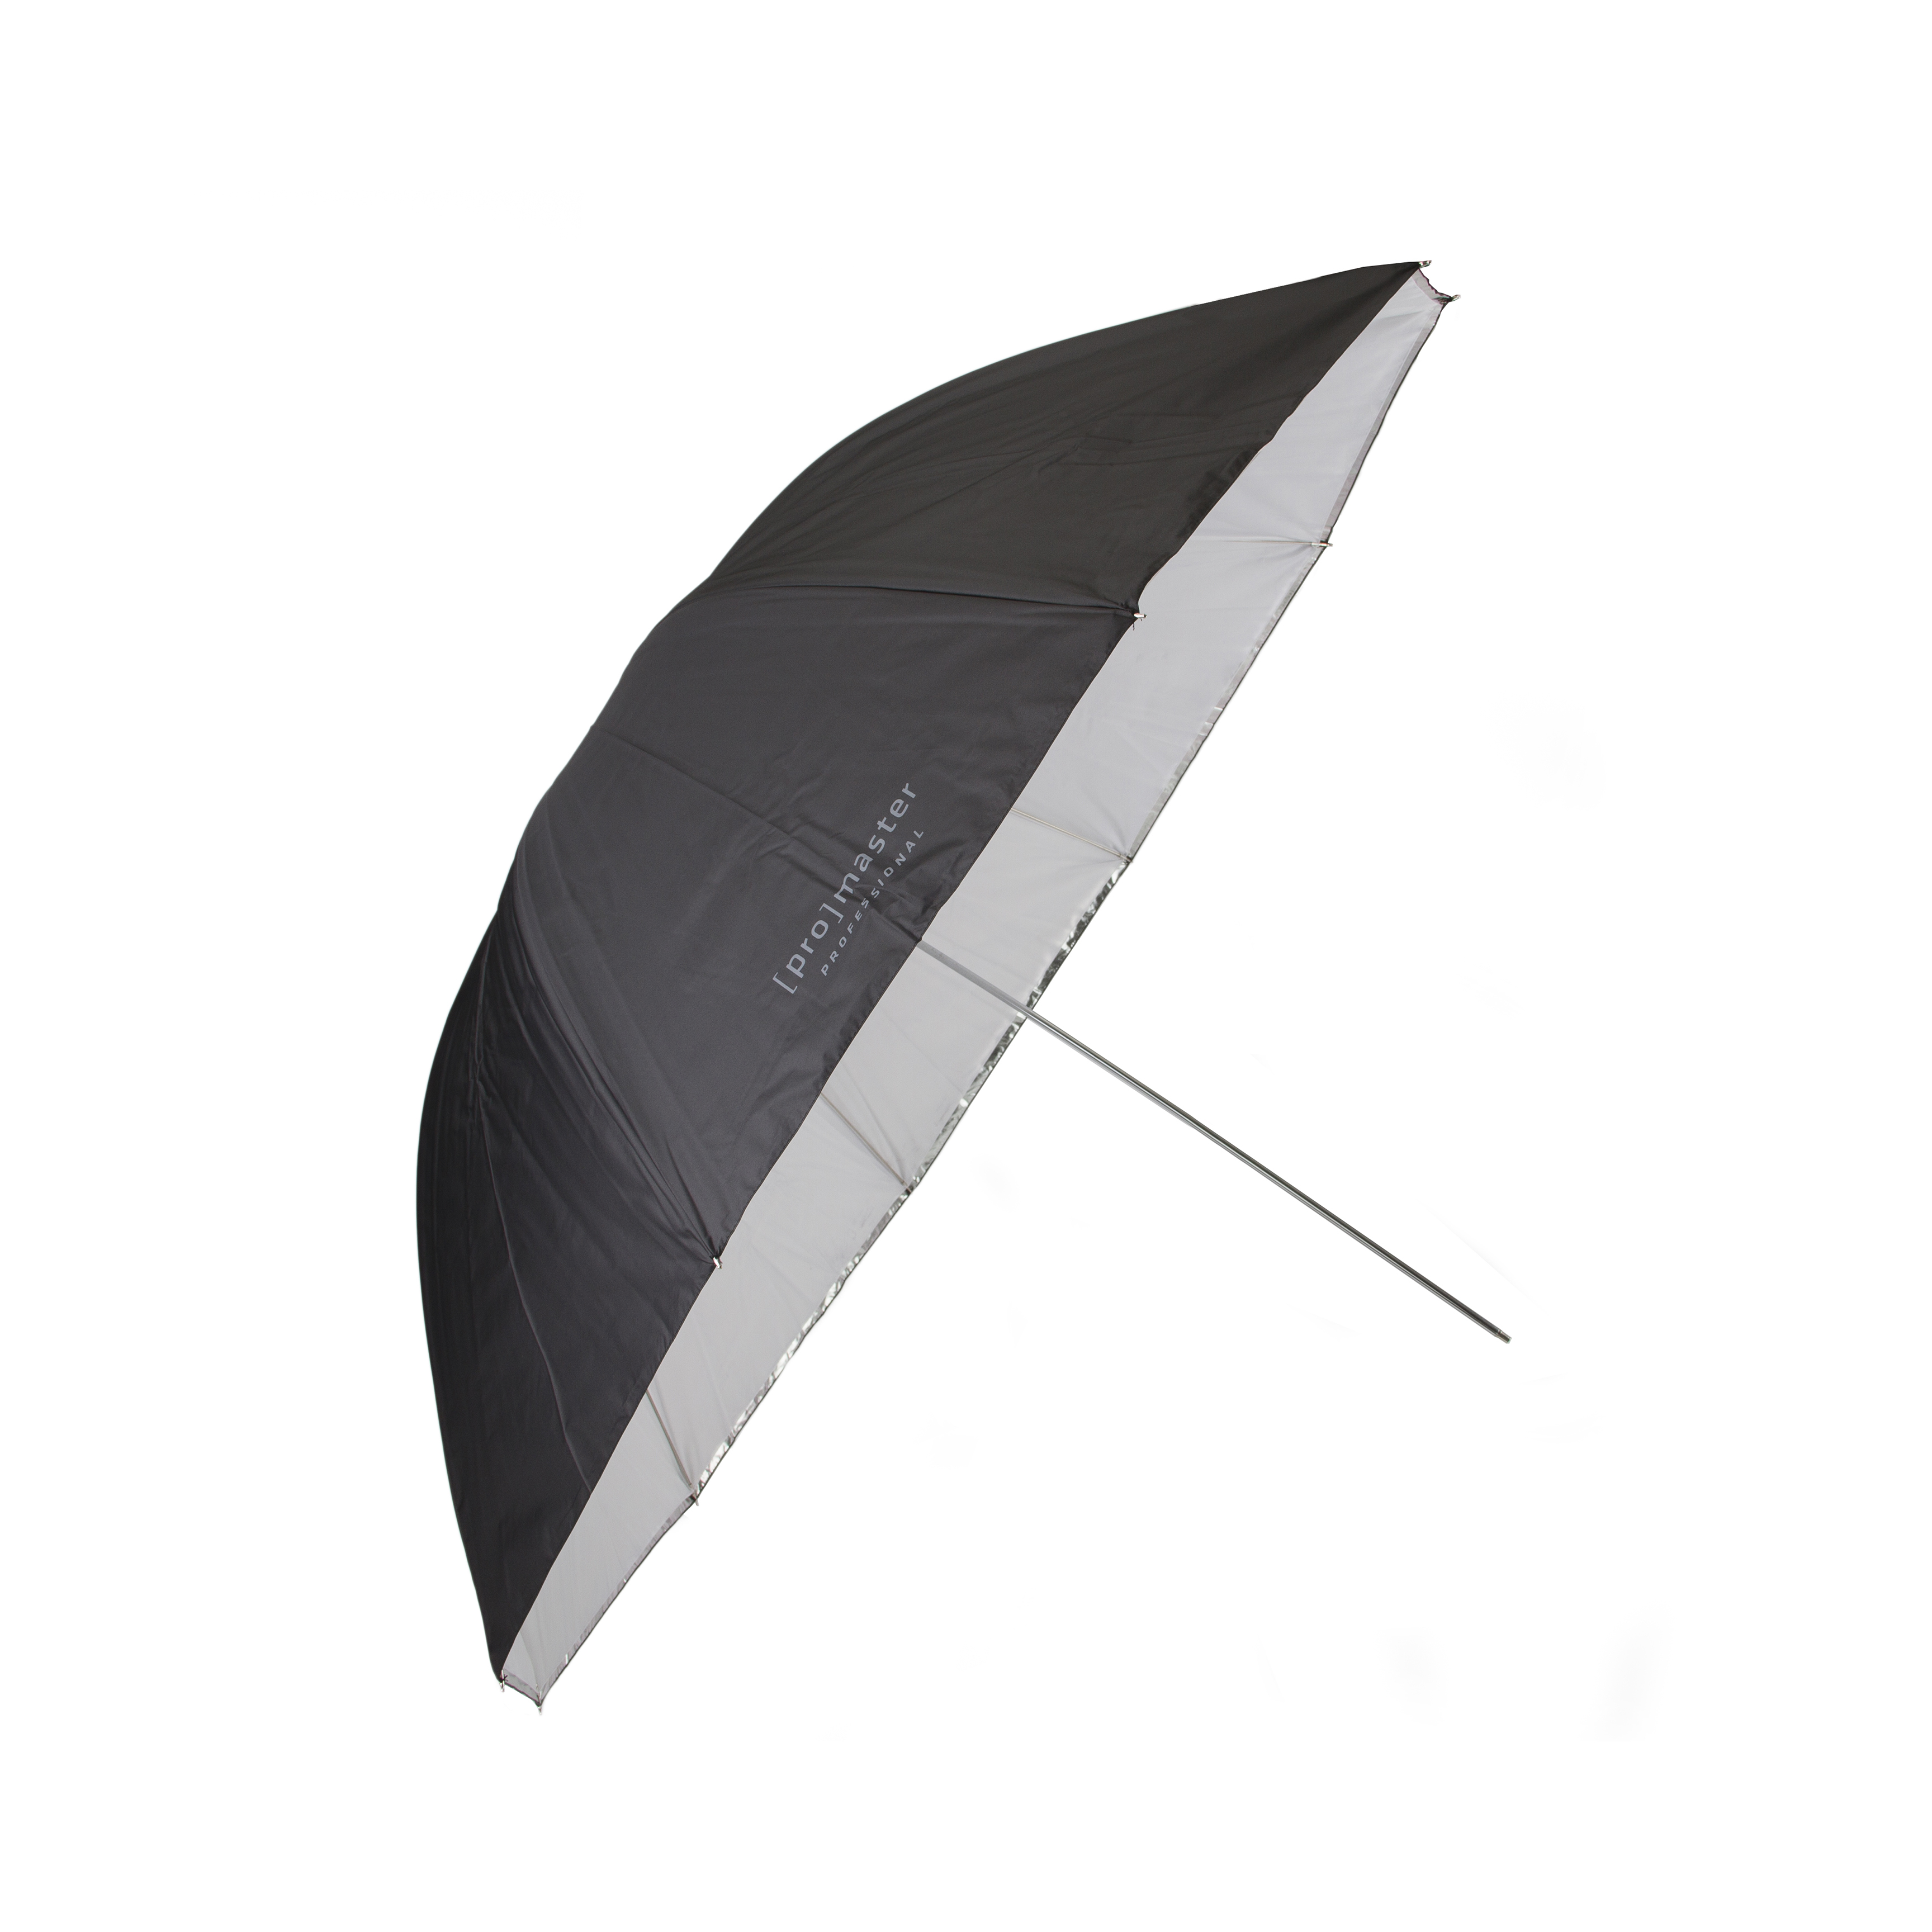 Promaster 9265 45" Convertible Professional Umbrella (White, Silver/Black)